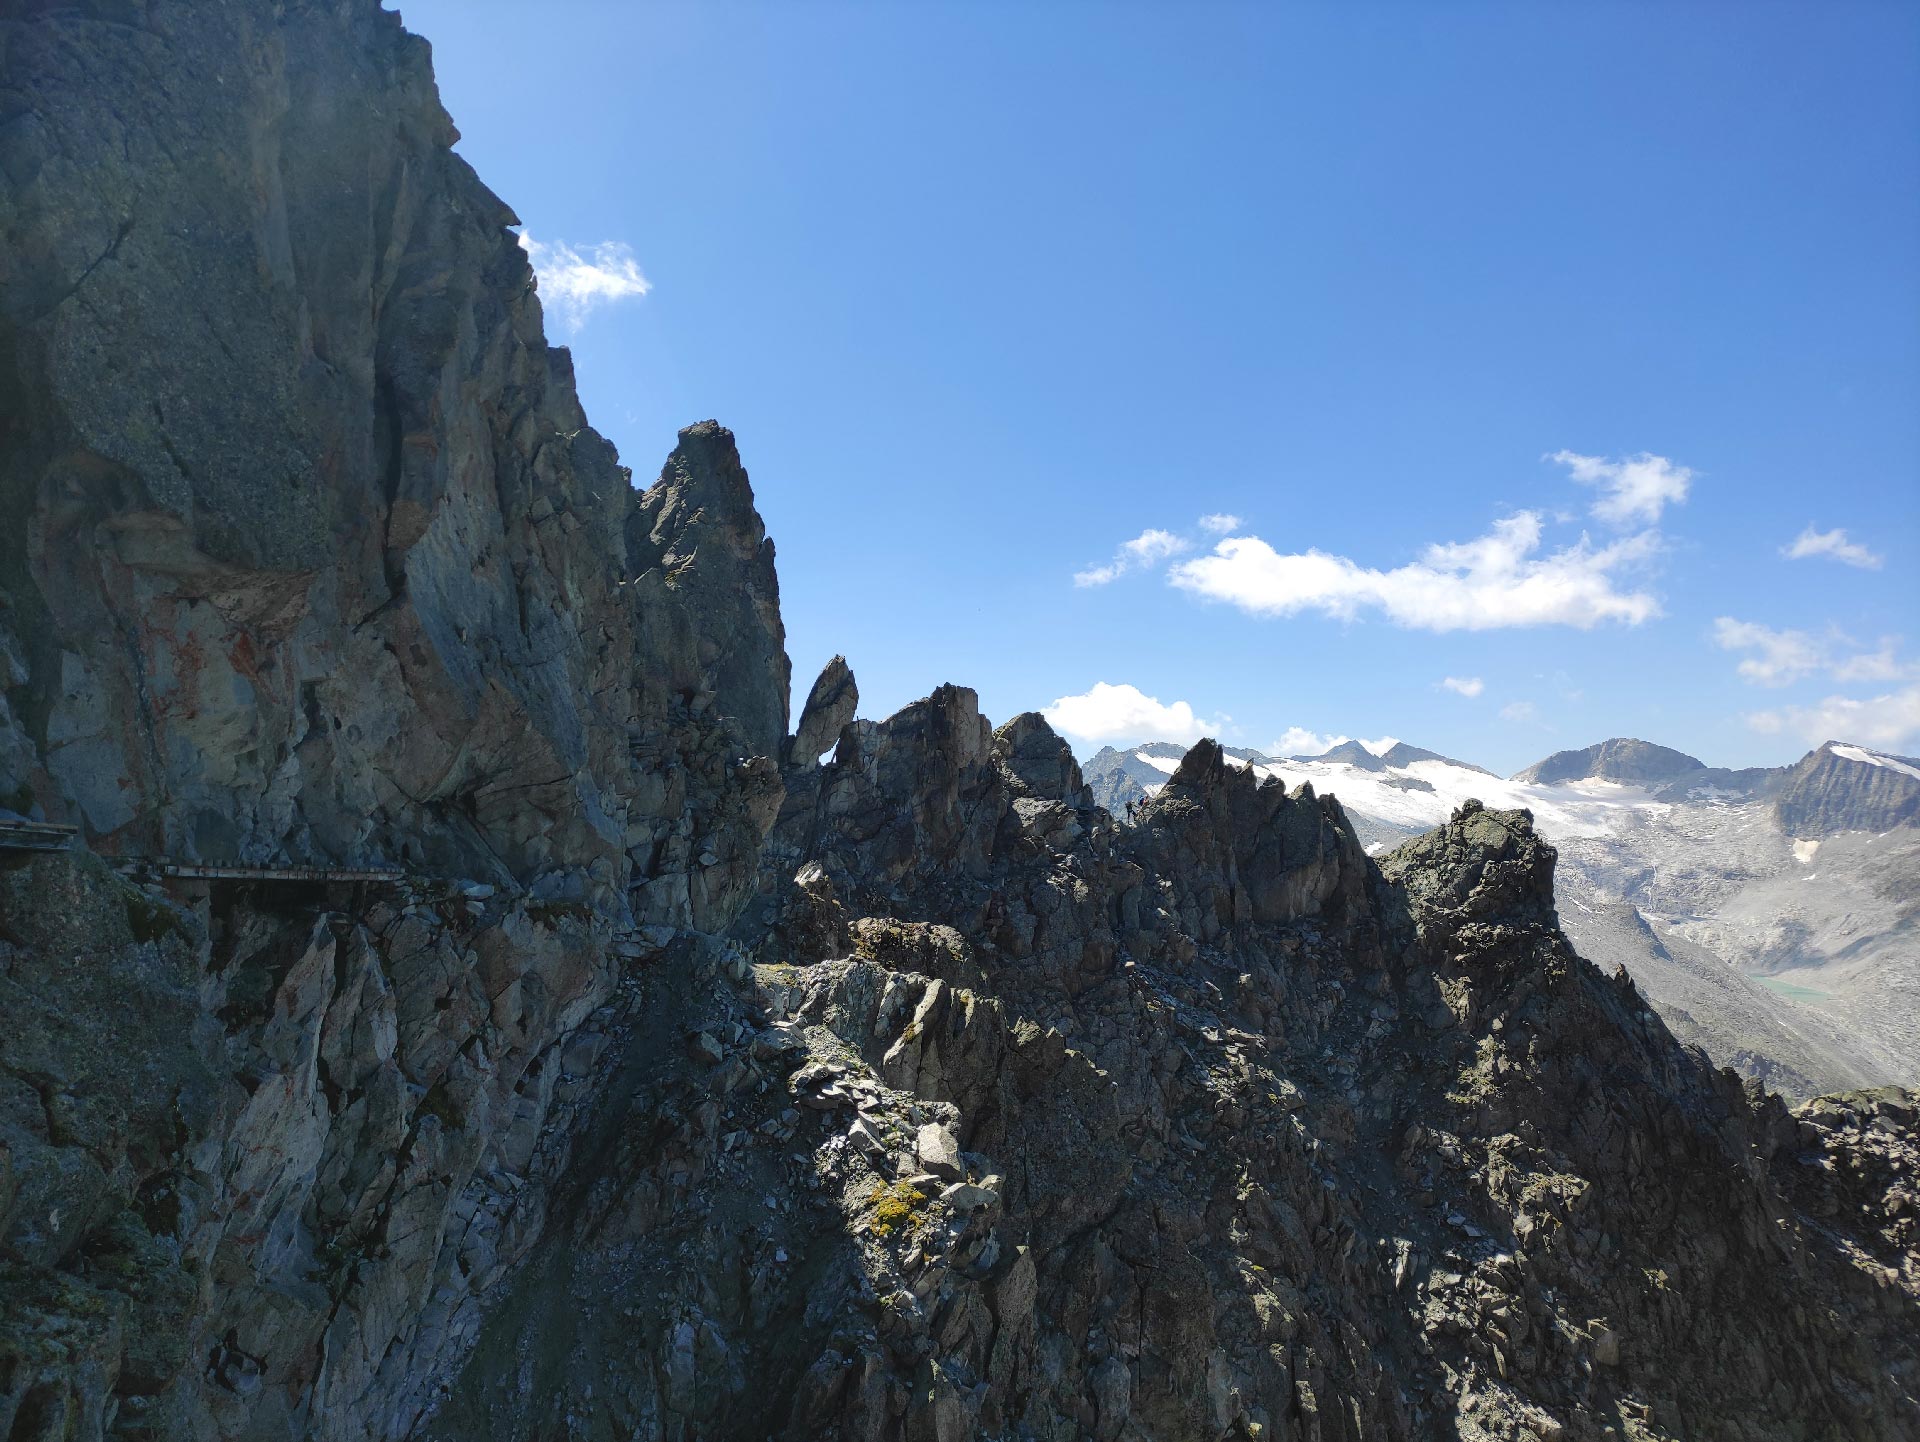 Il primo tratto del Sentiero dei Fiori in ambiente roccioso di alta montagna. Ben visibili le passerelle in legno, Tonale, Adamello